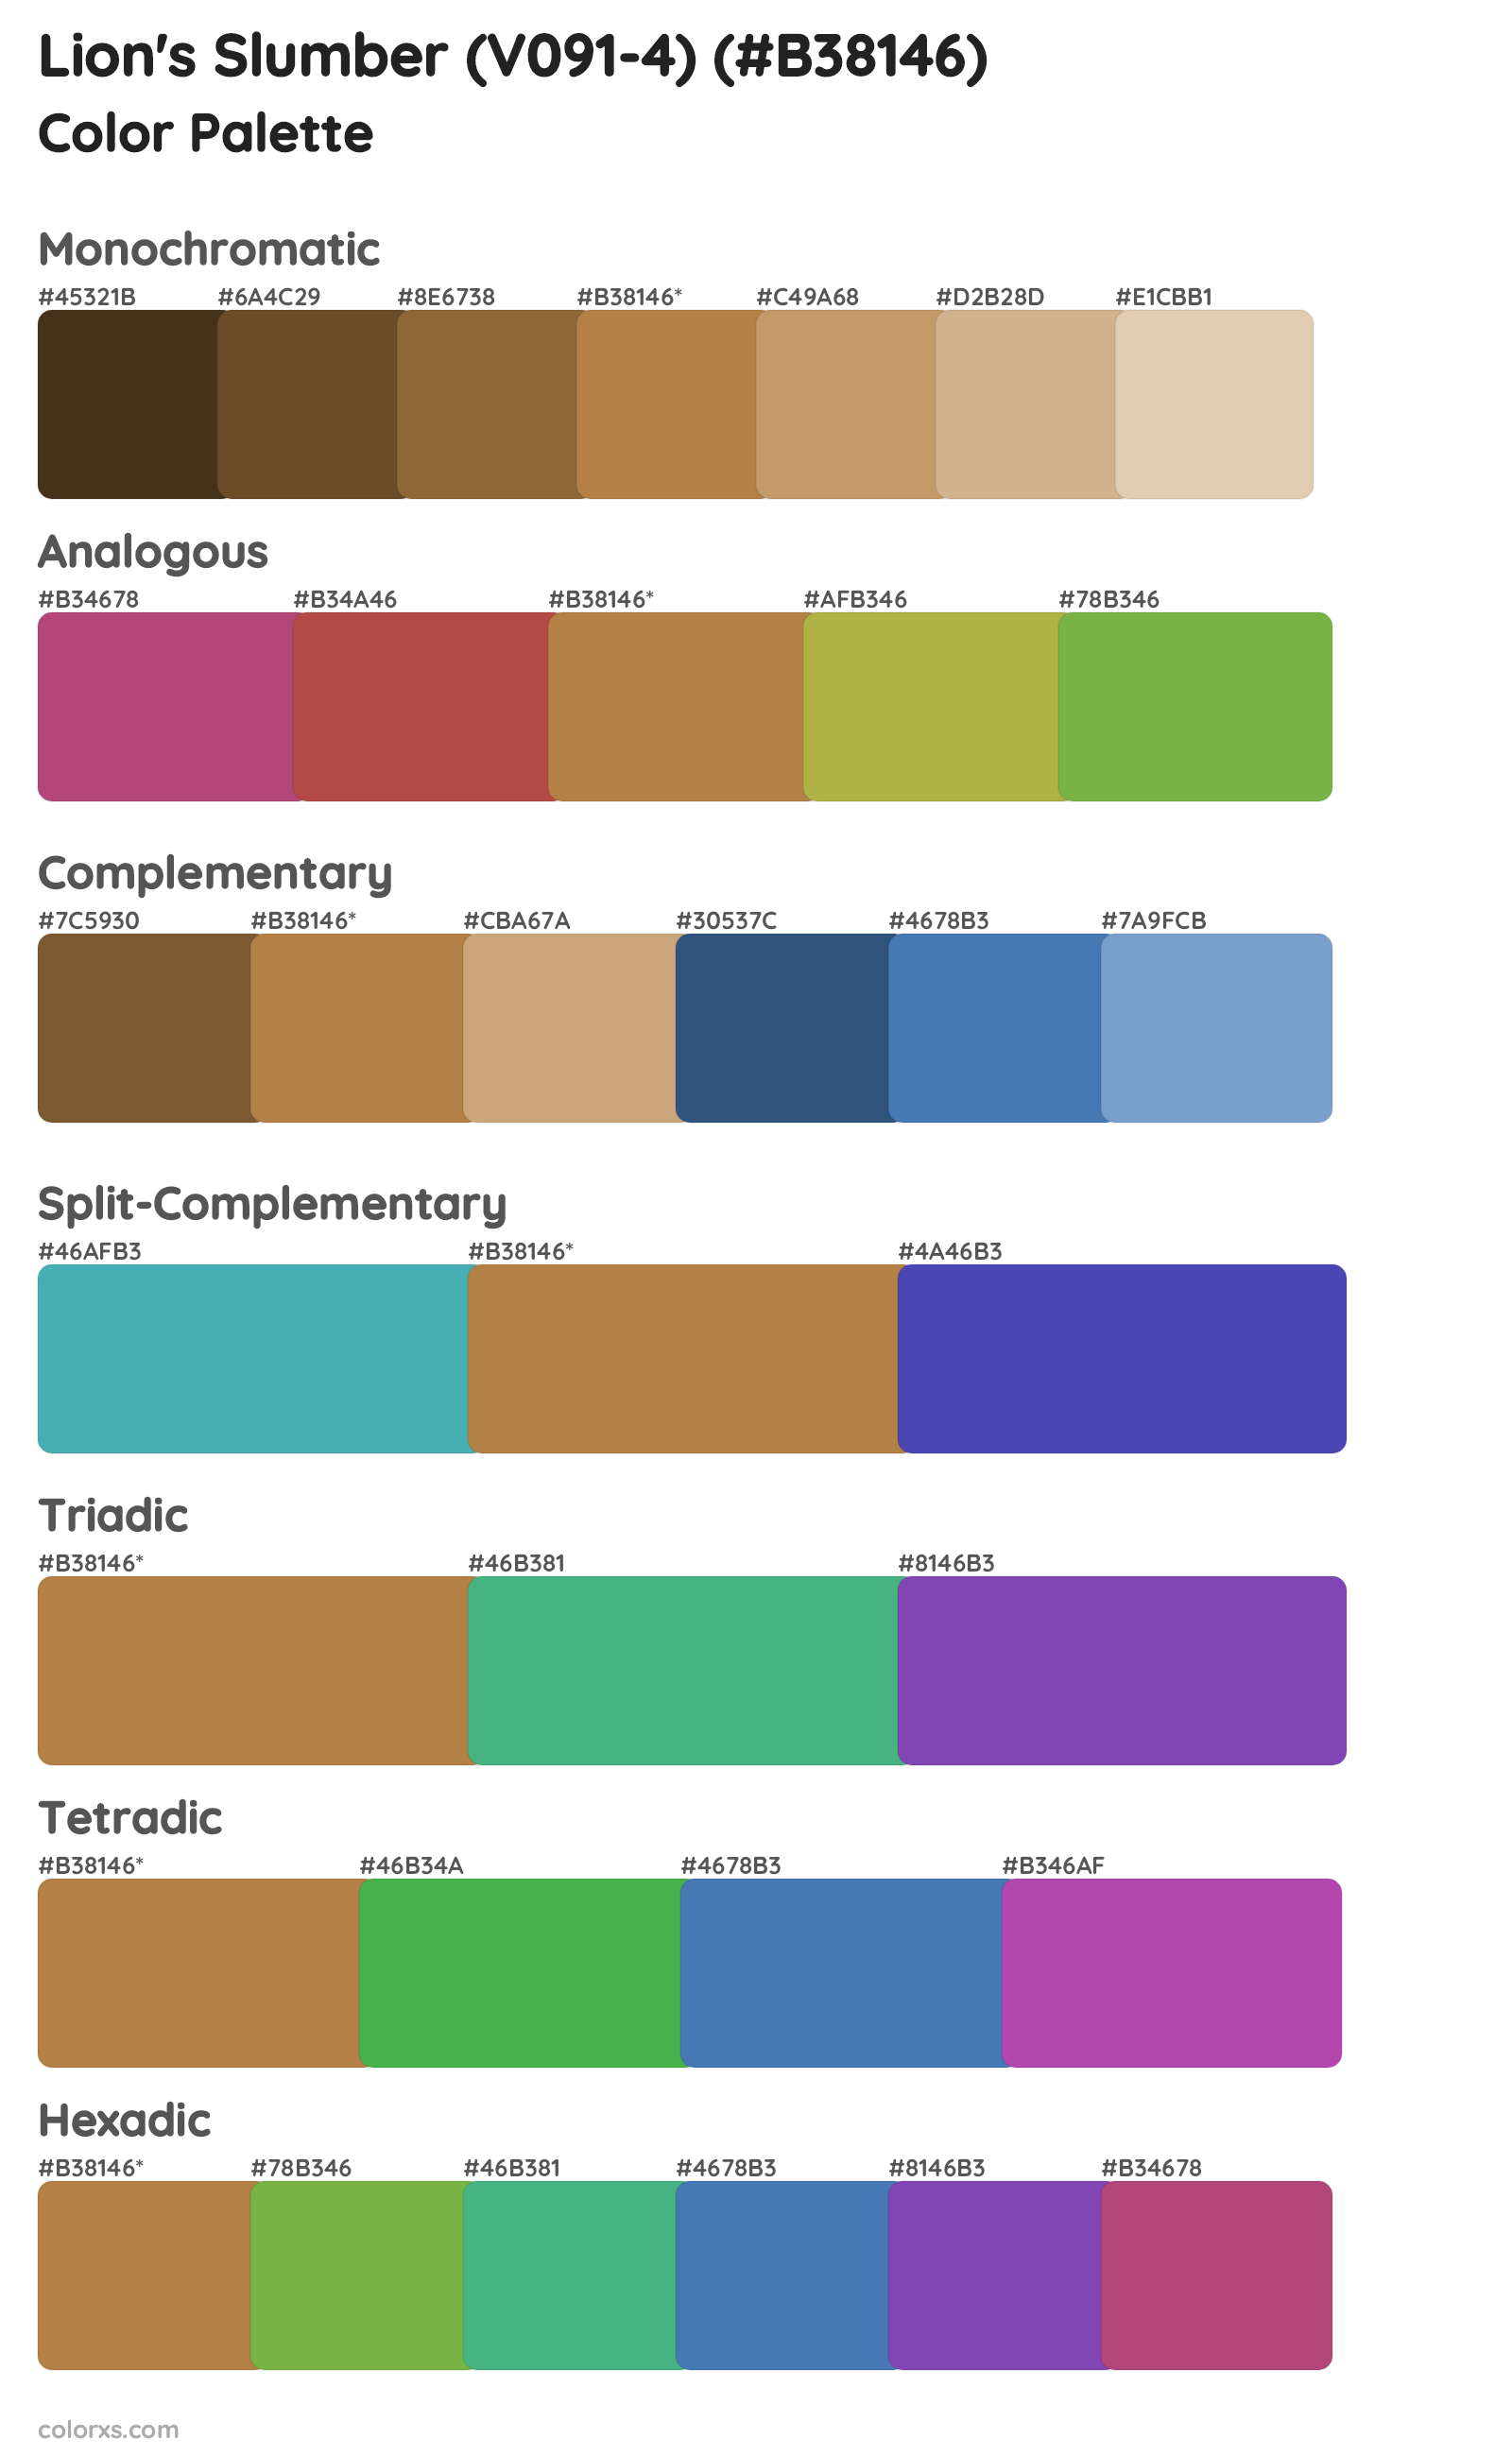 Lion's Slumber (V091-4) Color Scheme Palettes